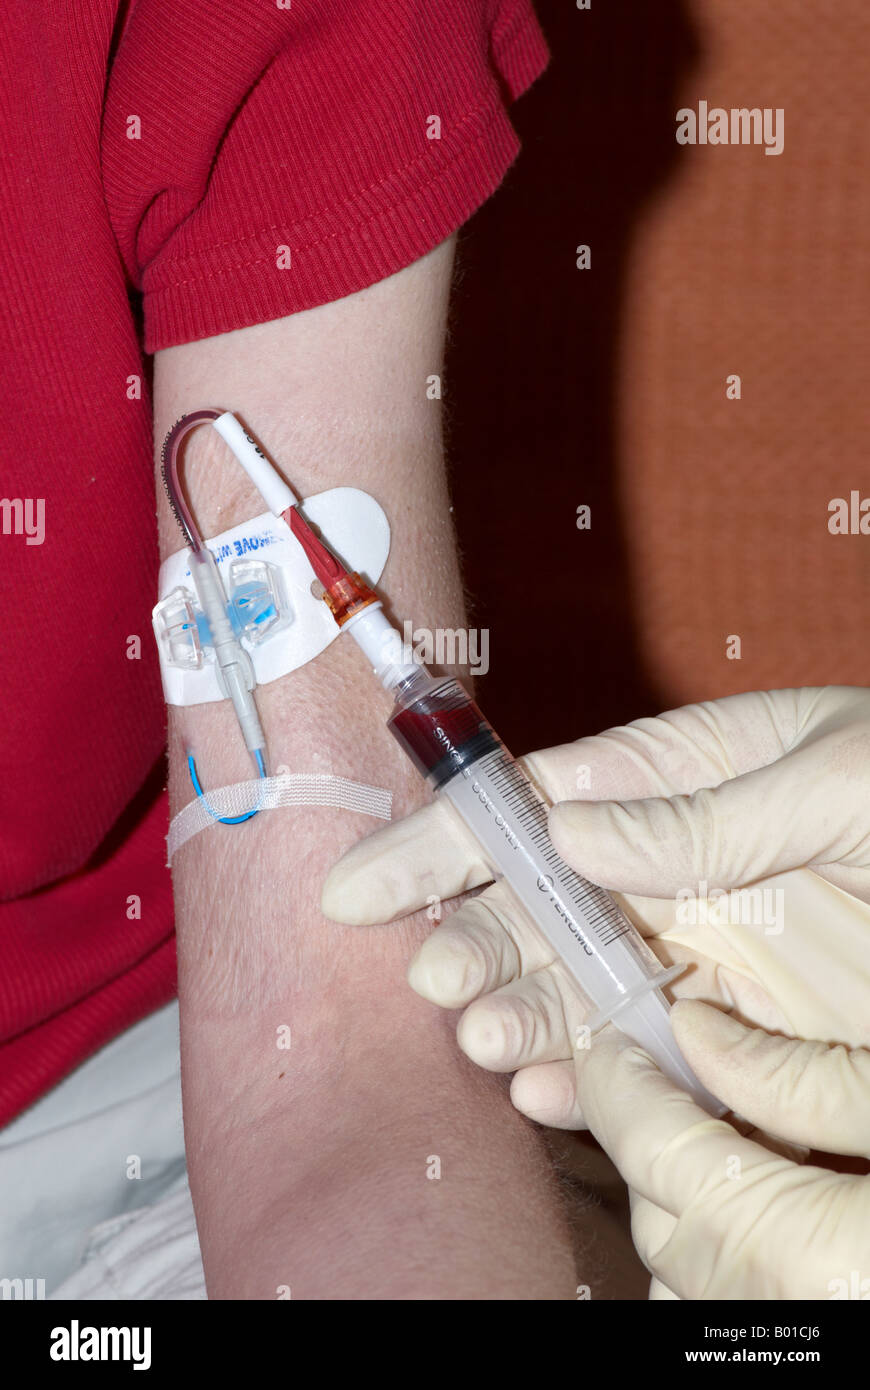 Blutentnahme aus einer Picc Linie peripher eingefügte zentrale Katheter mit  einer Spritze und OP-Handschuhe tragen Stockfotografie - Alamy